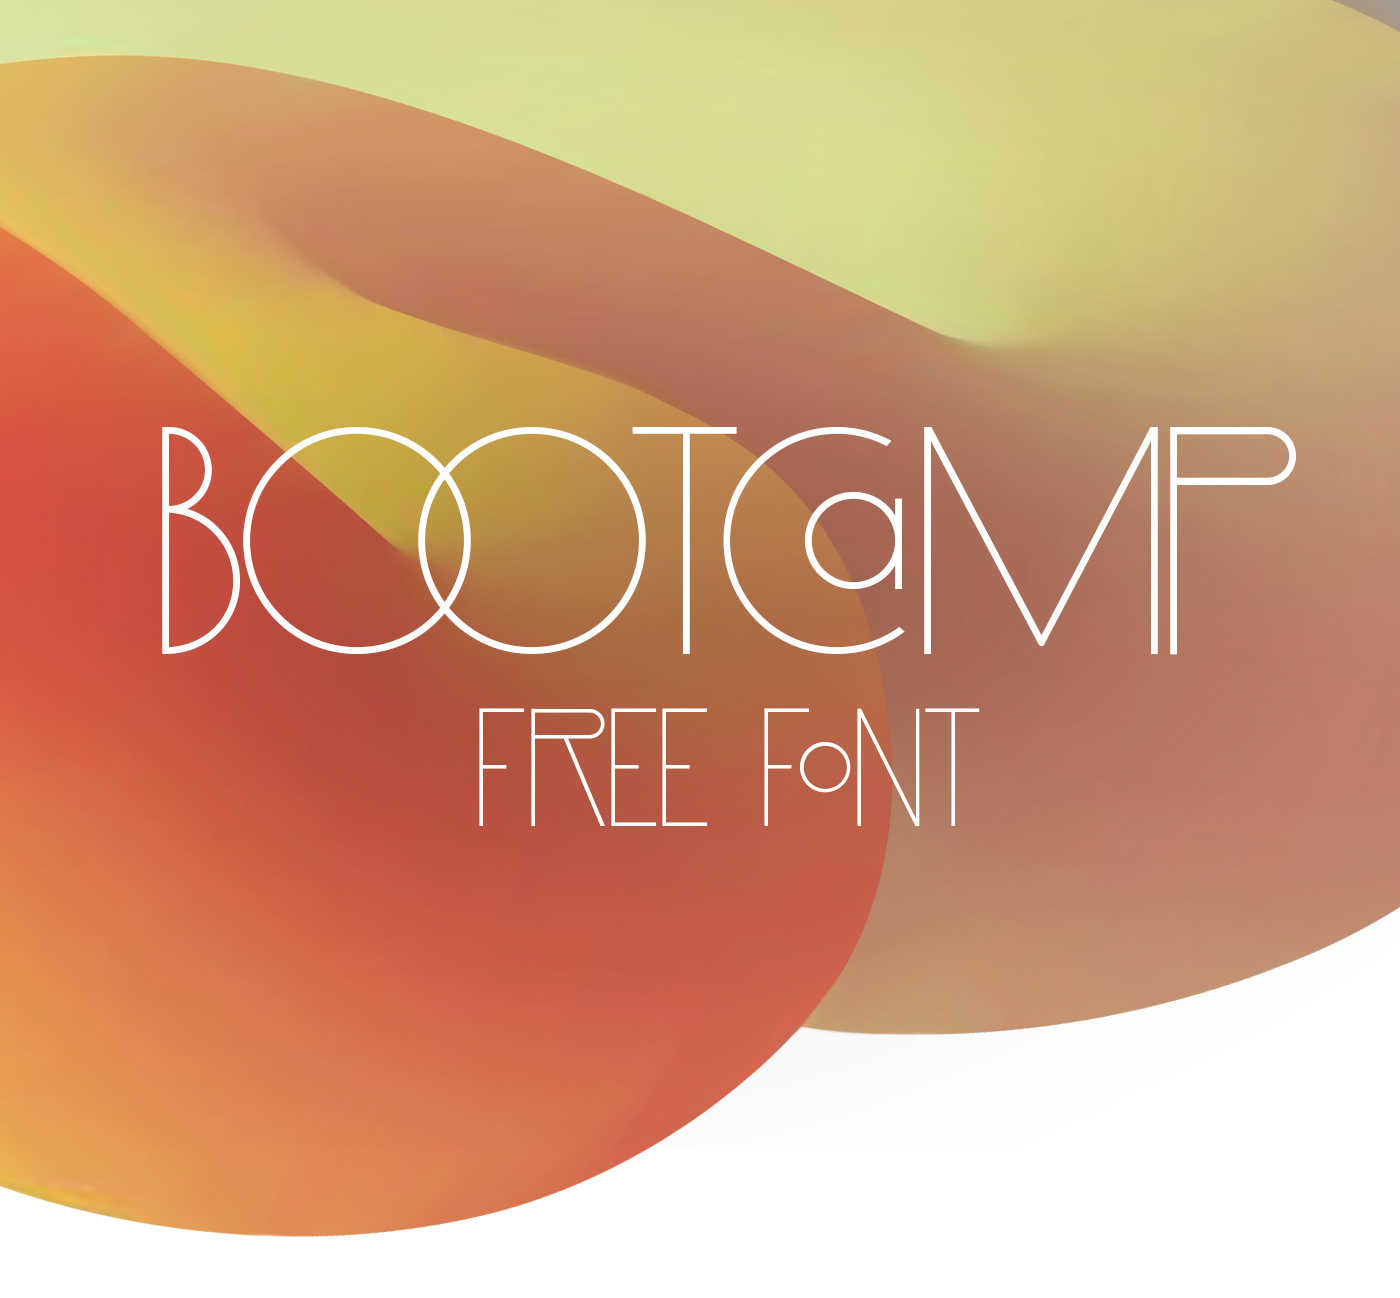 font freefont fonts type free freebie